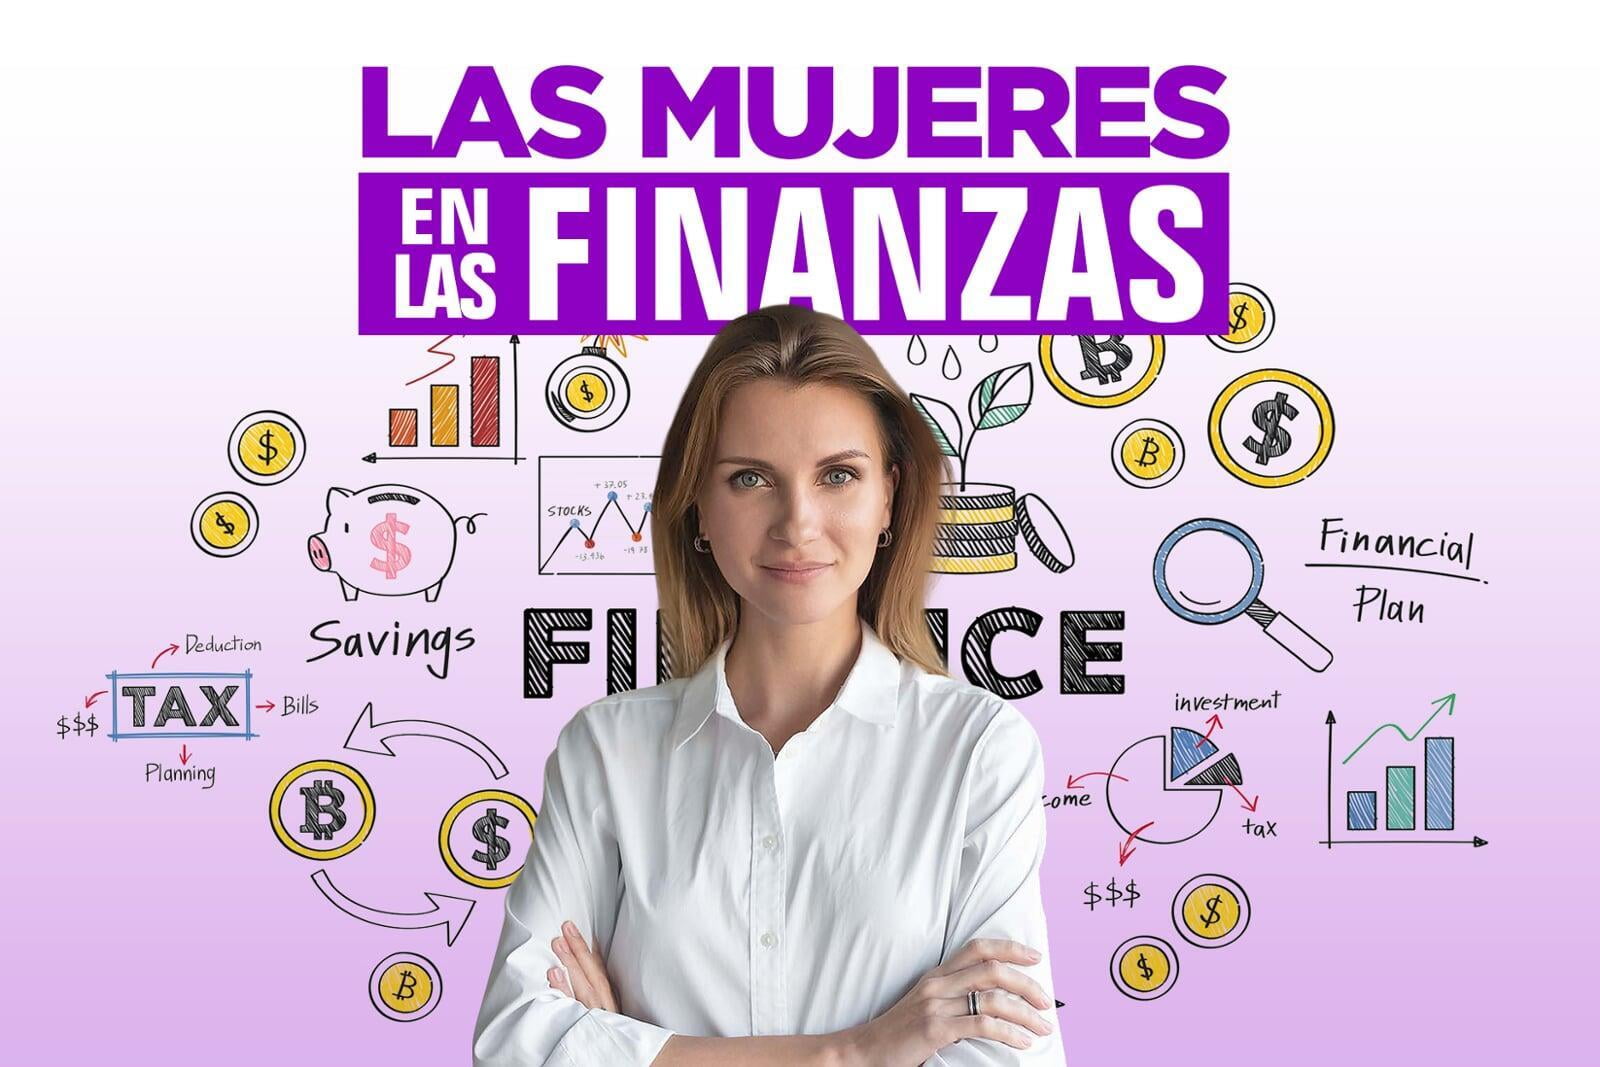 Las Mujeres en las Finanzas